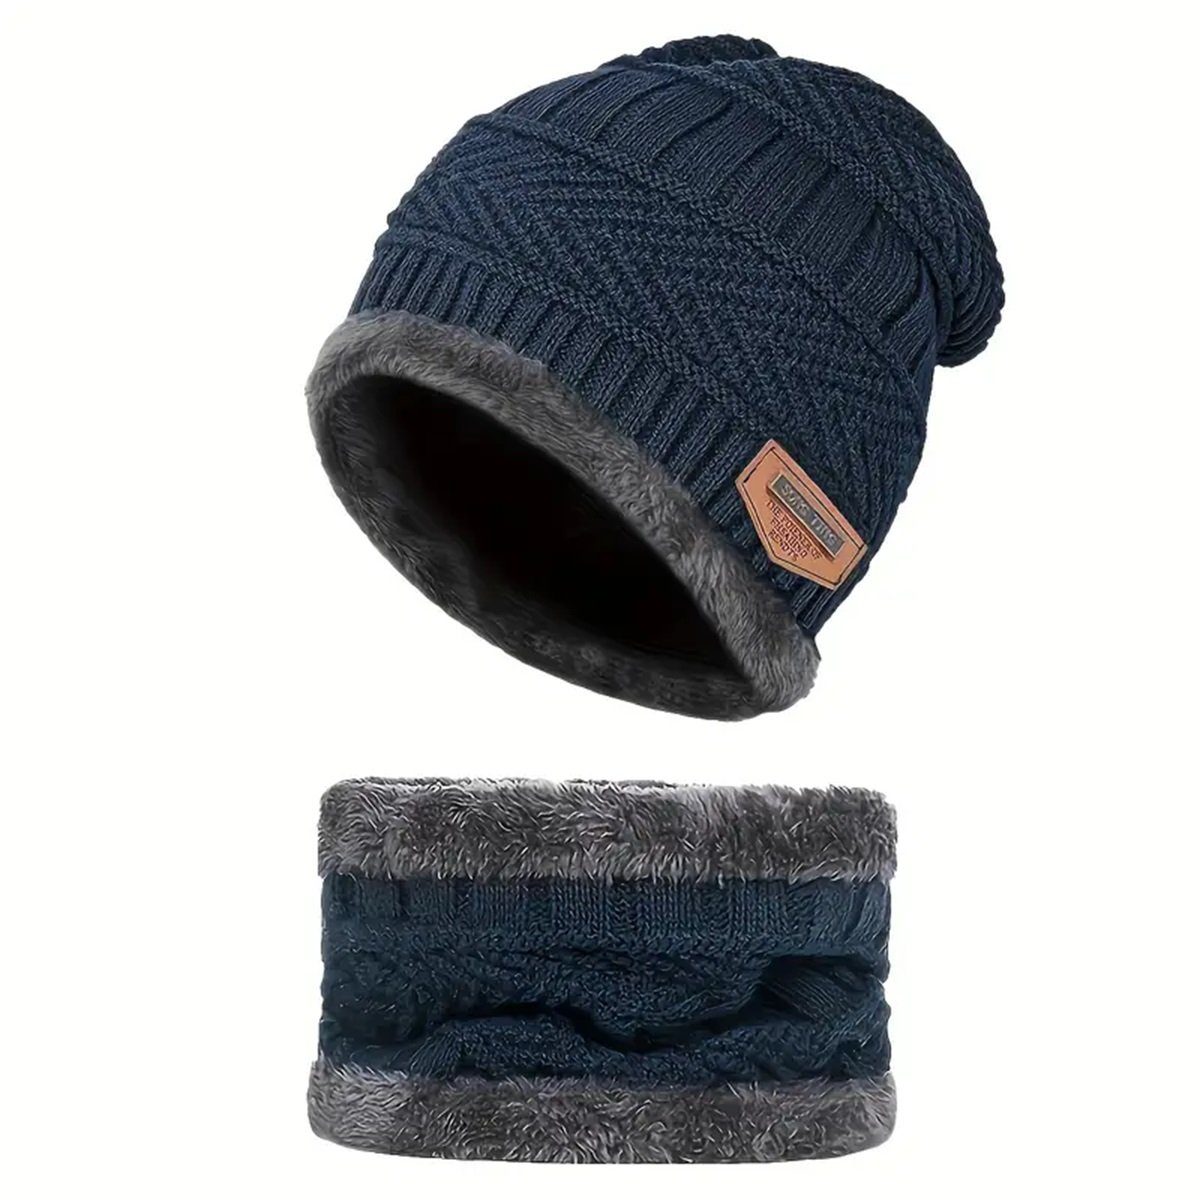 Selef Creation Mütze & Schal Warmes Beanie Mütze Schal Set für Winter, Gefüttert (2) Blau | Mützen-Sets